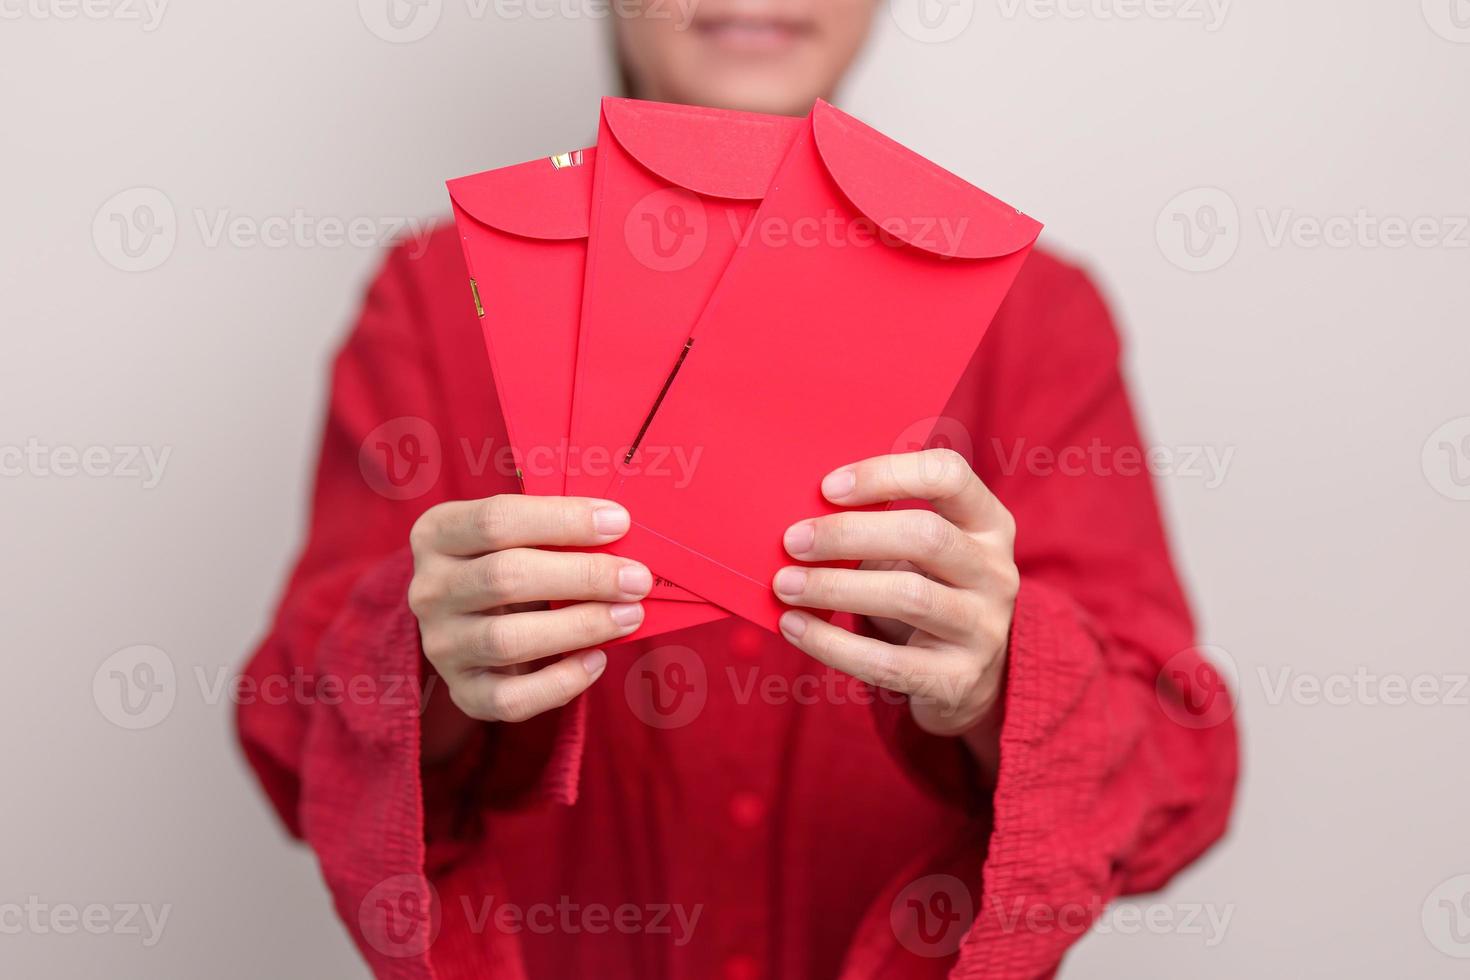 femme tenant une enveloppe rouge chinoise, cadeau en argent pour les vacances du nouvel an lunaire photo